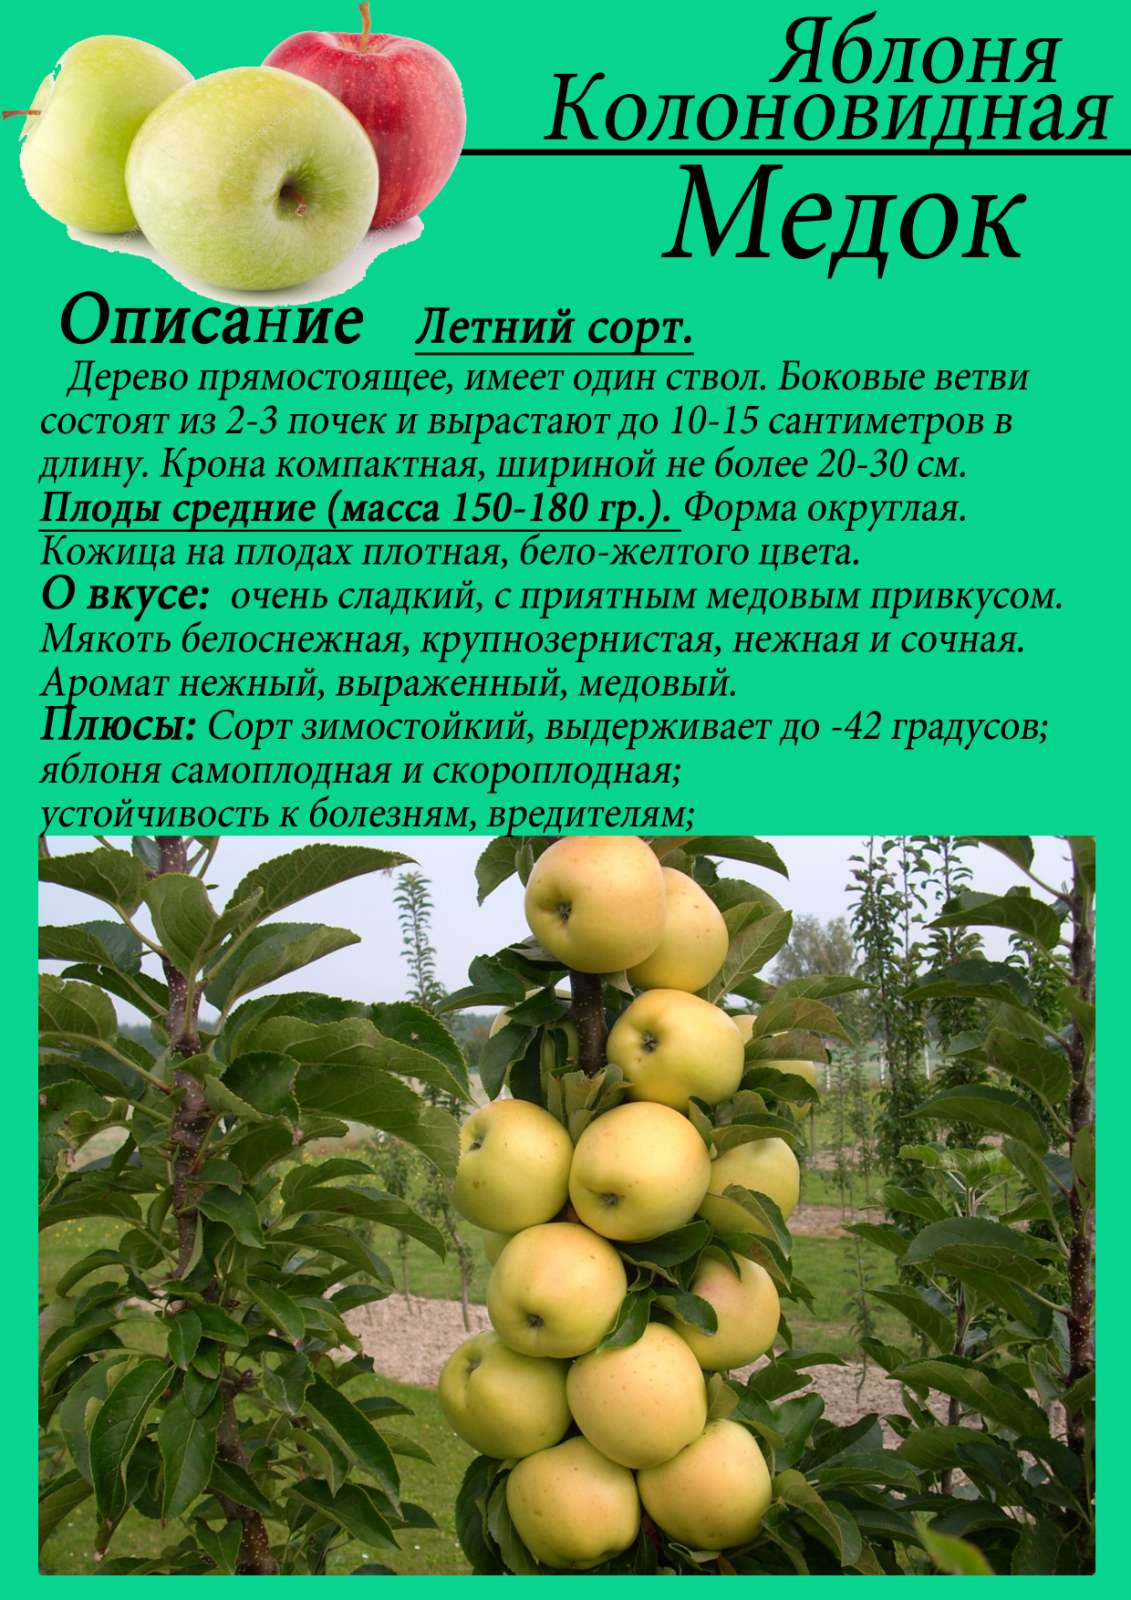 Описание сорта яблони аркадик: фото яблок, важные характеристики, урожайность с дерева